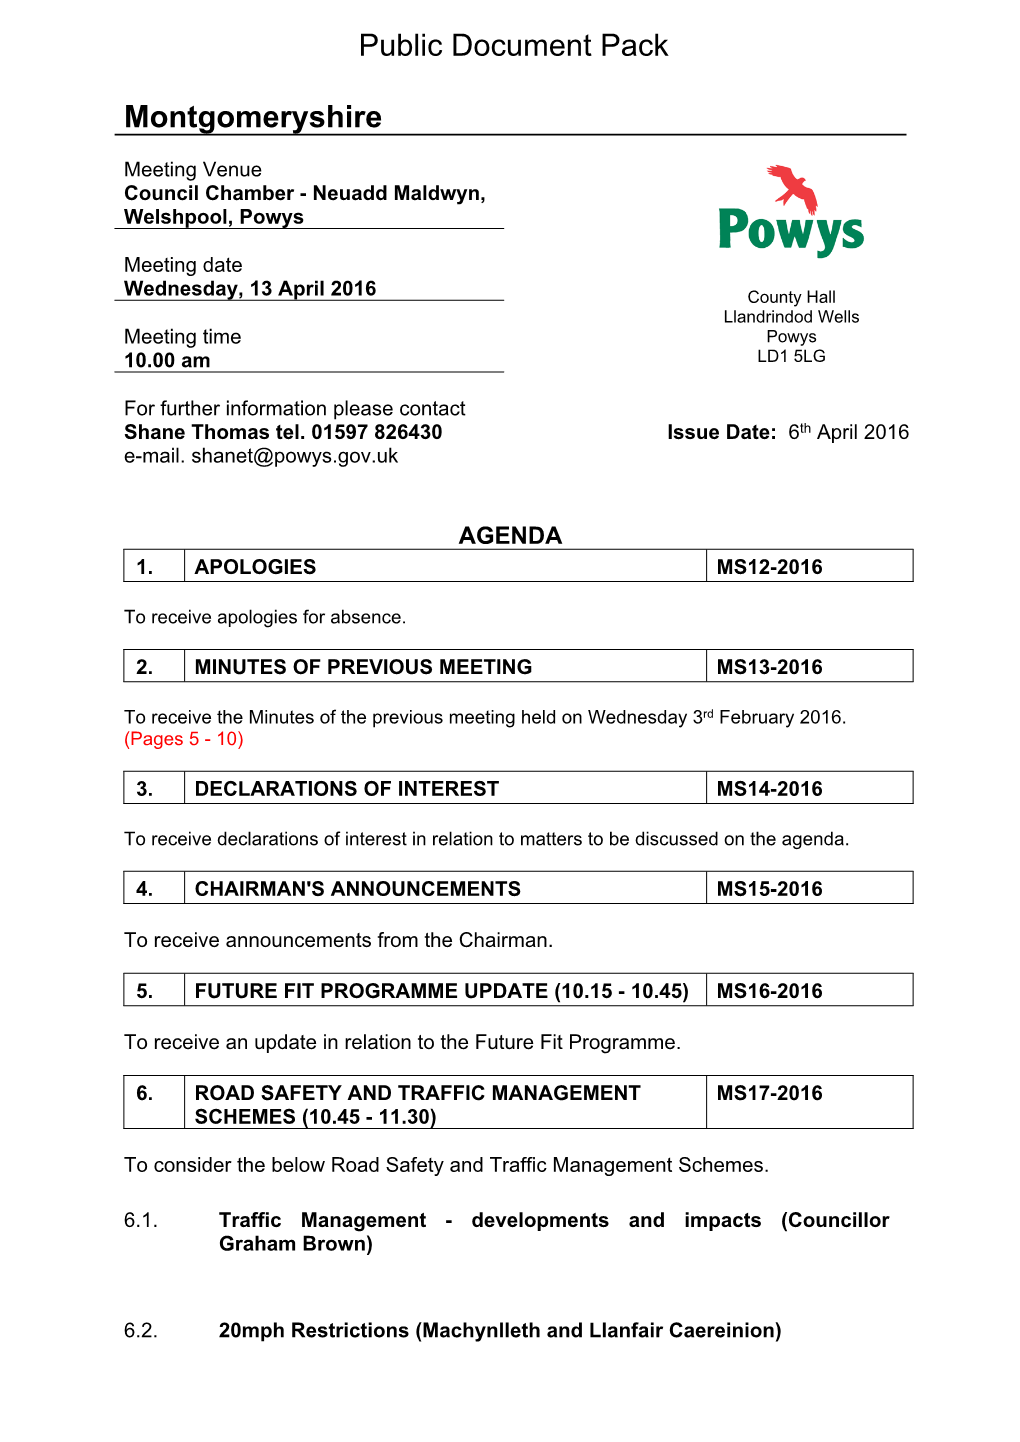 (Public Pack)Agenda Document for Montgomeryshire, 13/04/2016 10:00